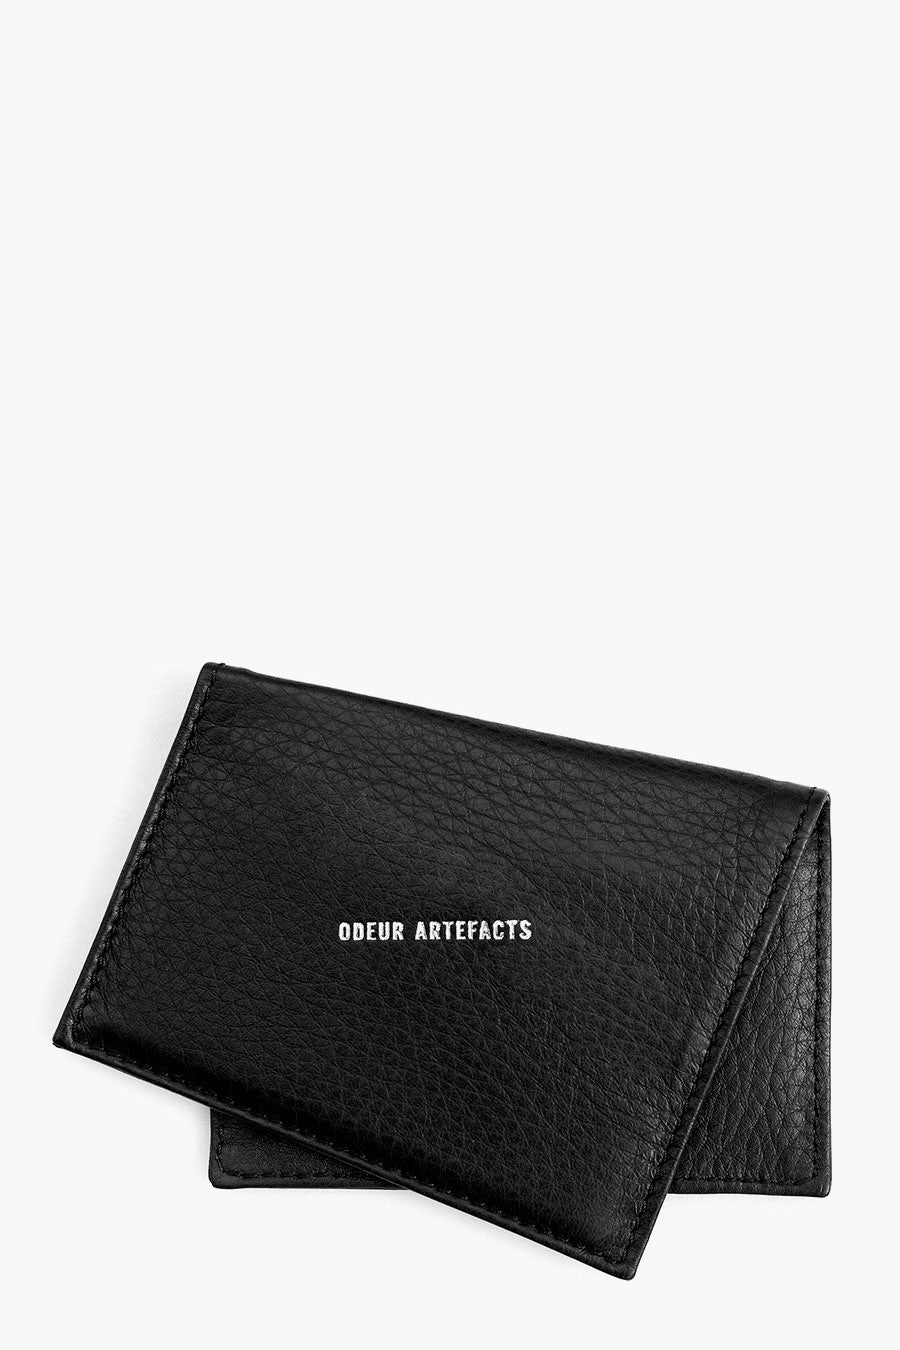 Odeur Artefacts Skew Card Holder: Black Leather